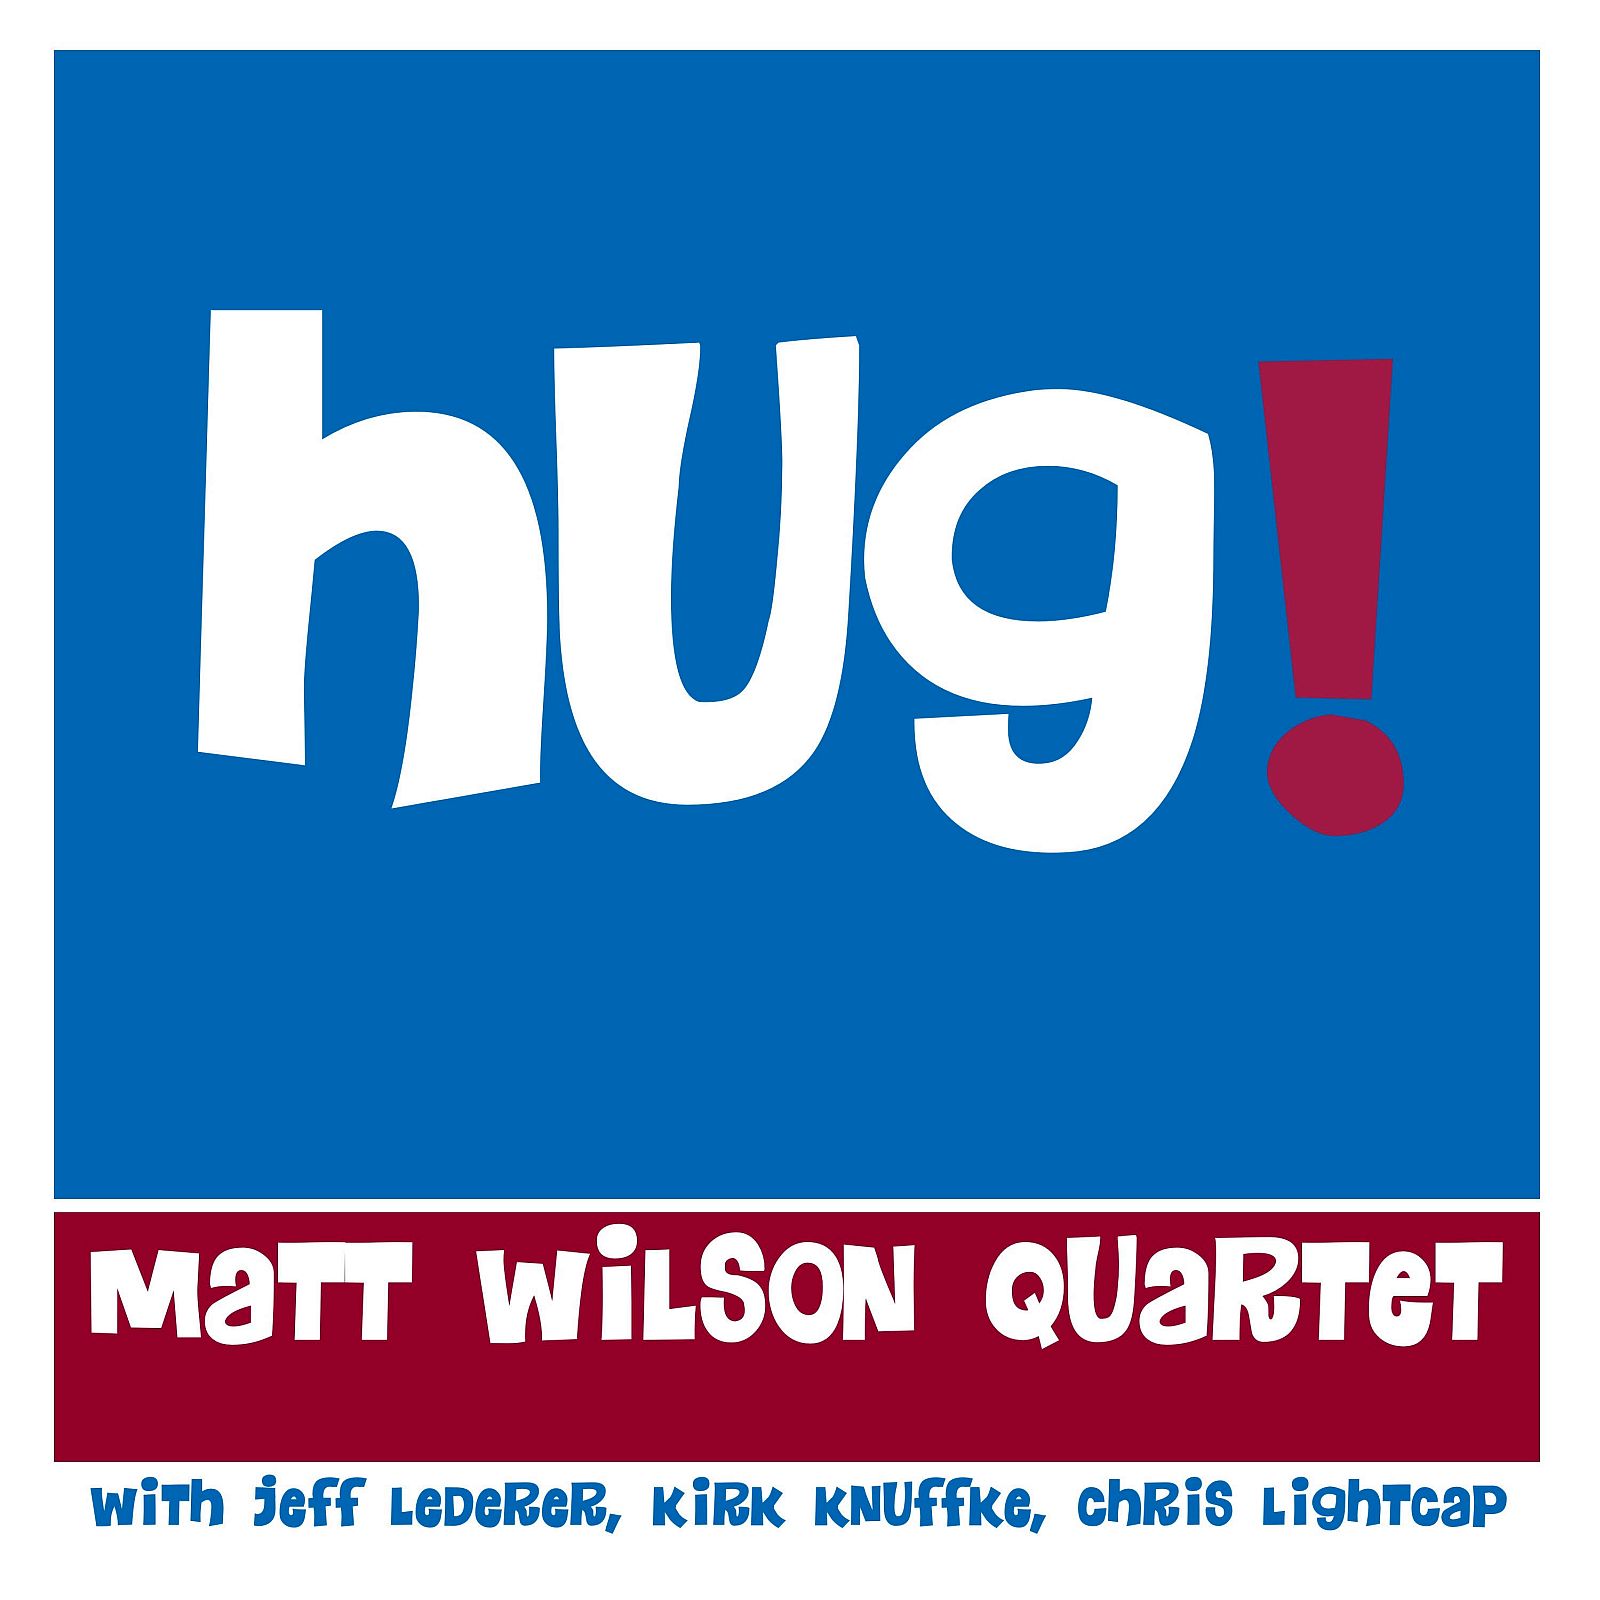 Cover_Matt_Wilson_Hug 1600dpi